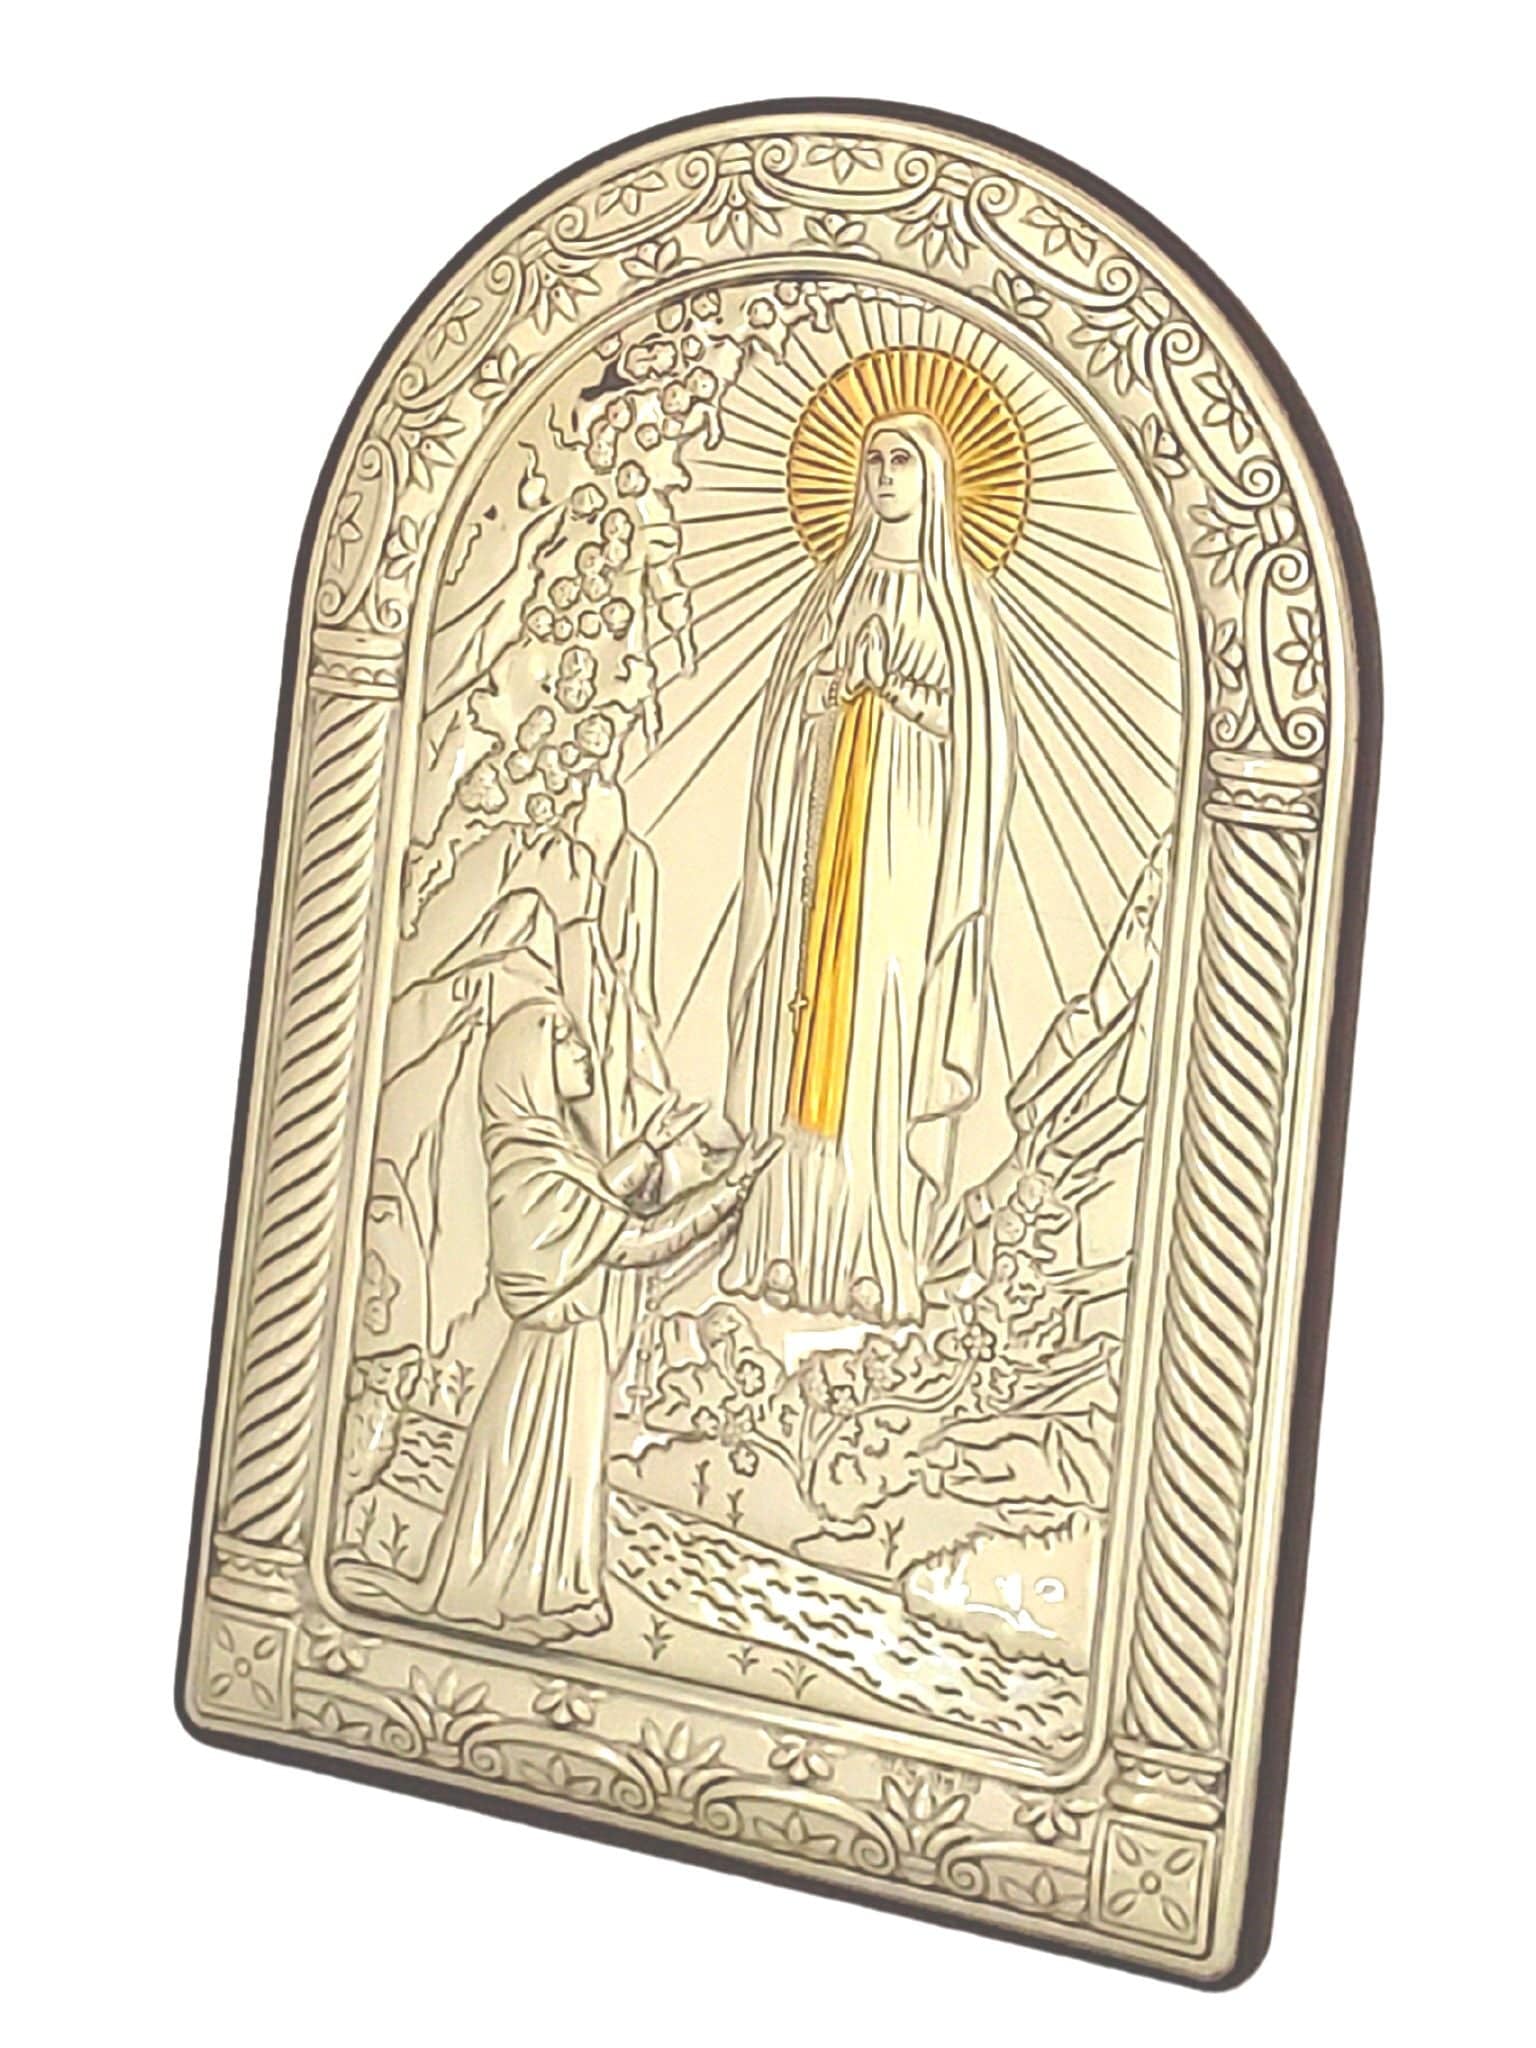 Adorno Italiano de Prata Nossa Senhora de Lourdes 16 x 10 cm-TerraCotta Arte Sacra